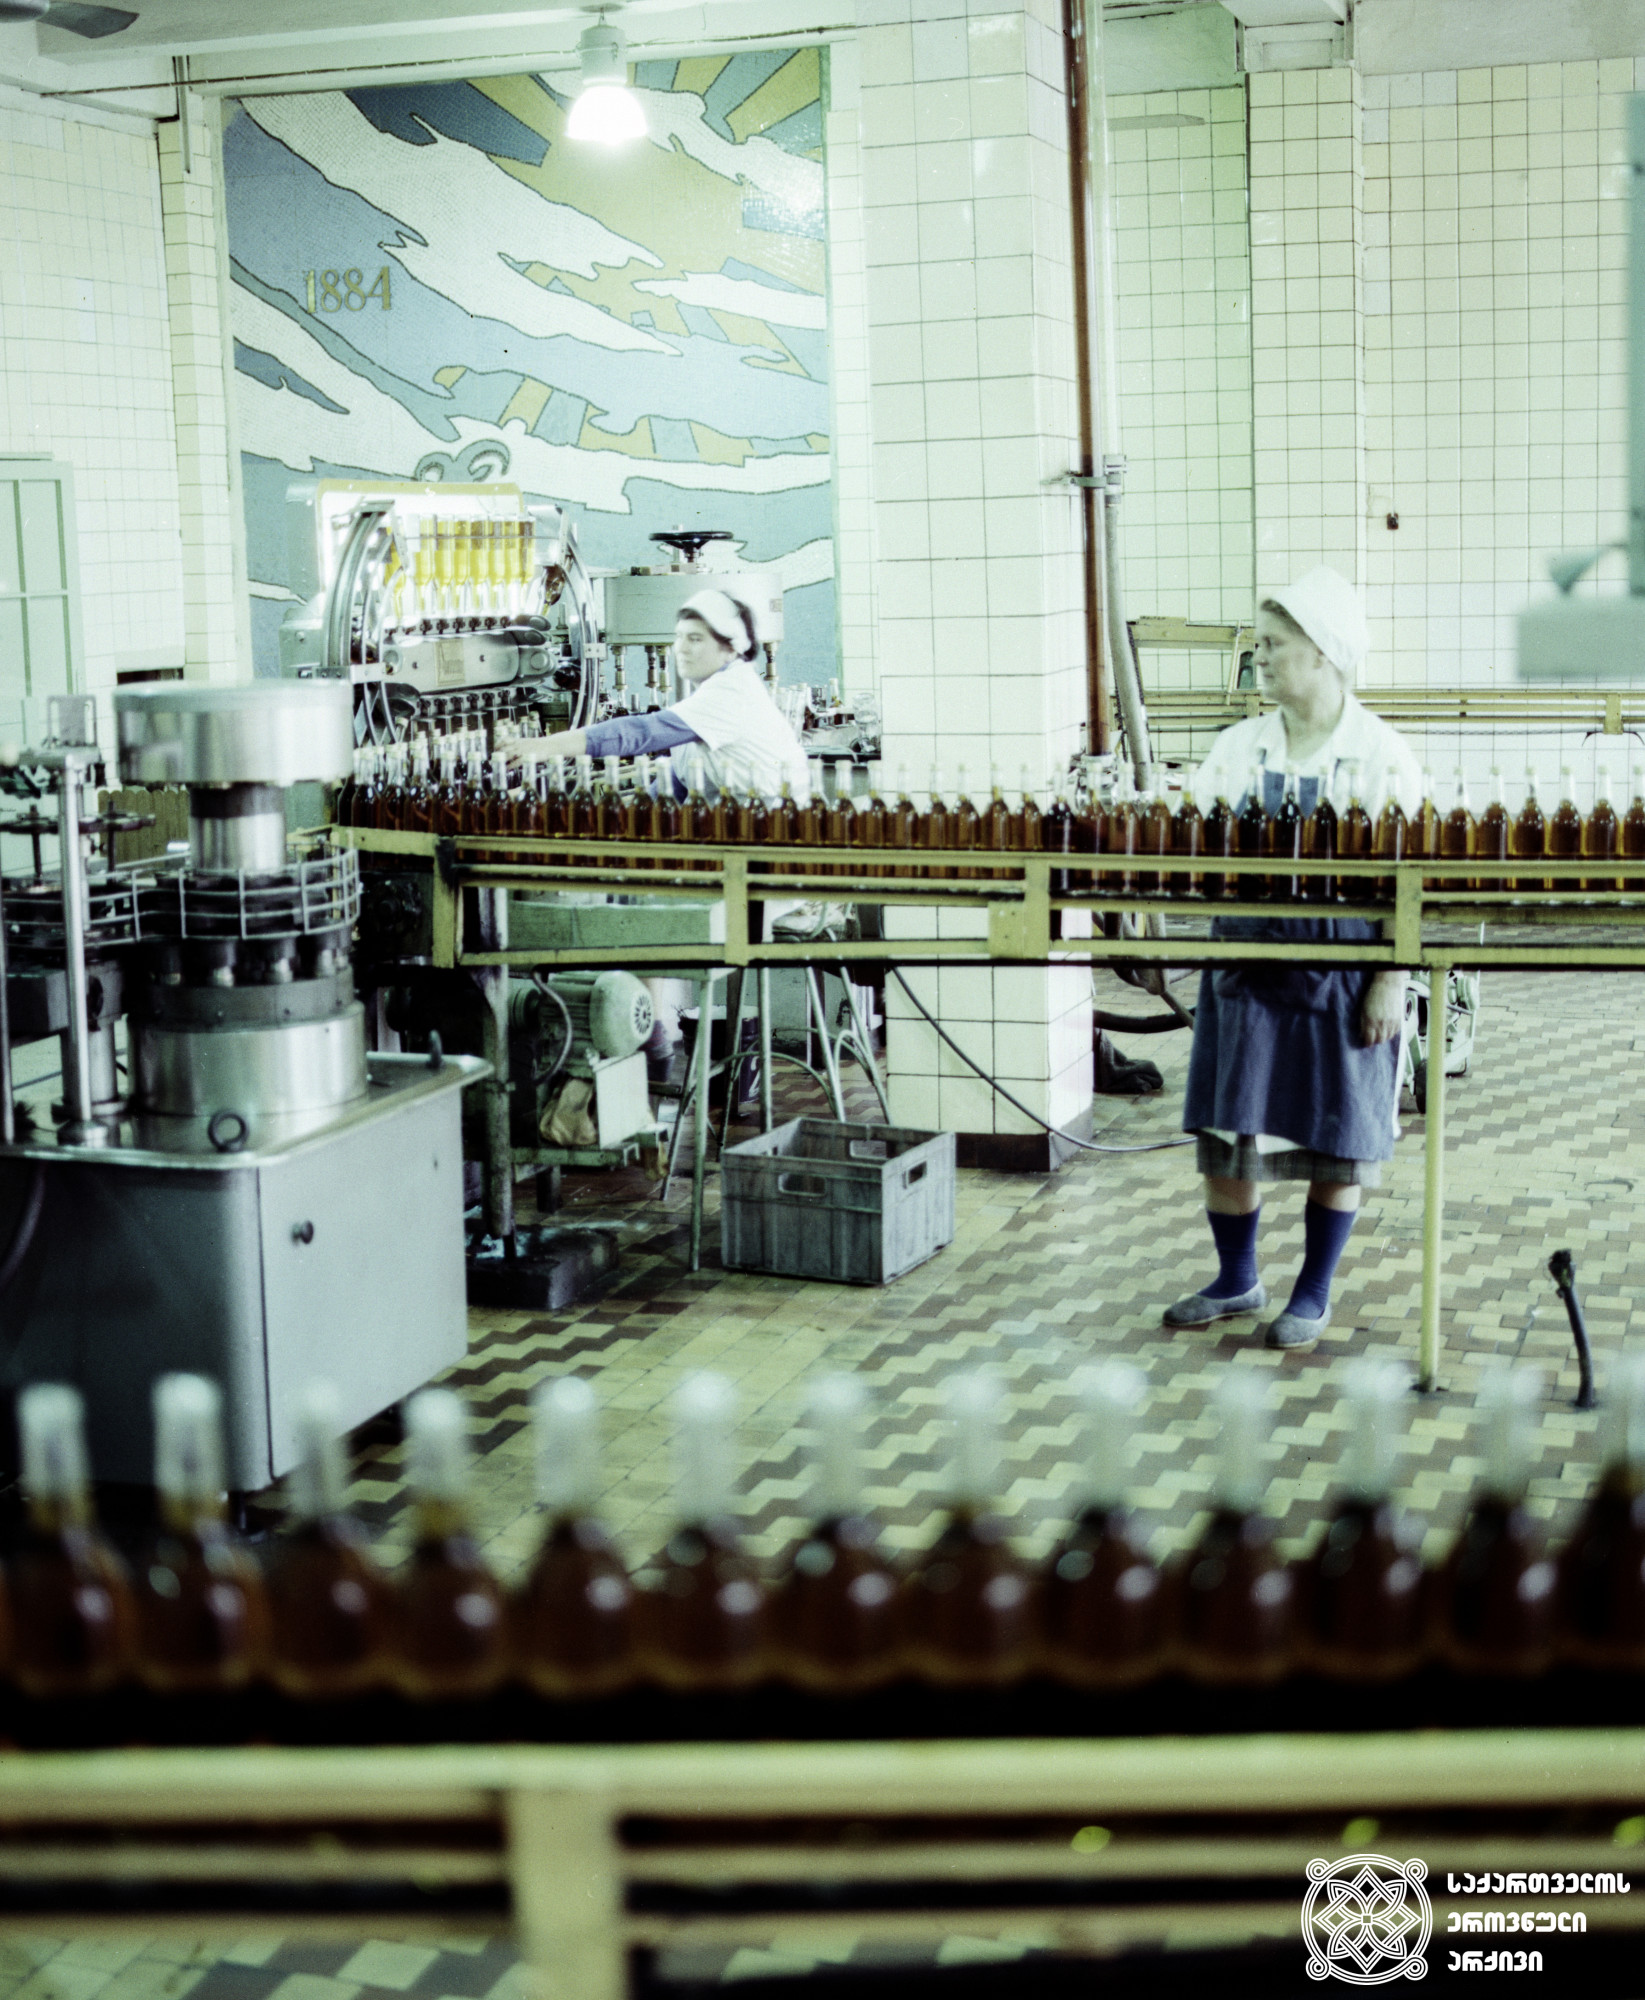 კონიაკის ქარხანა<br>
ფოტო: მალხაზ დათიკაშვილი <br>
1982 წელი
<br>
Brandy factory <br>
Photo by Malkhaz Datikashvili <br>
1982